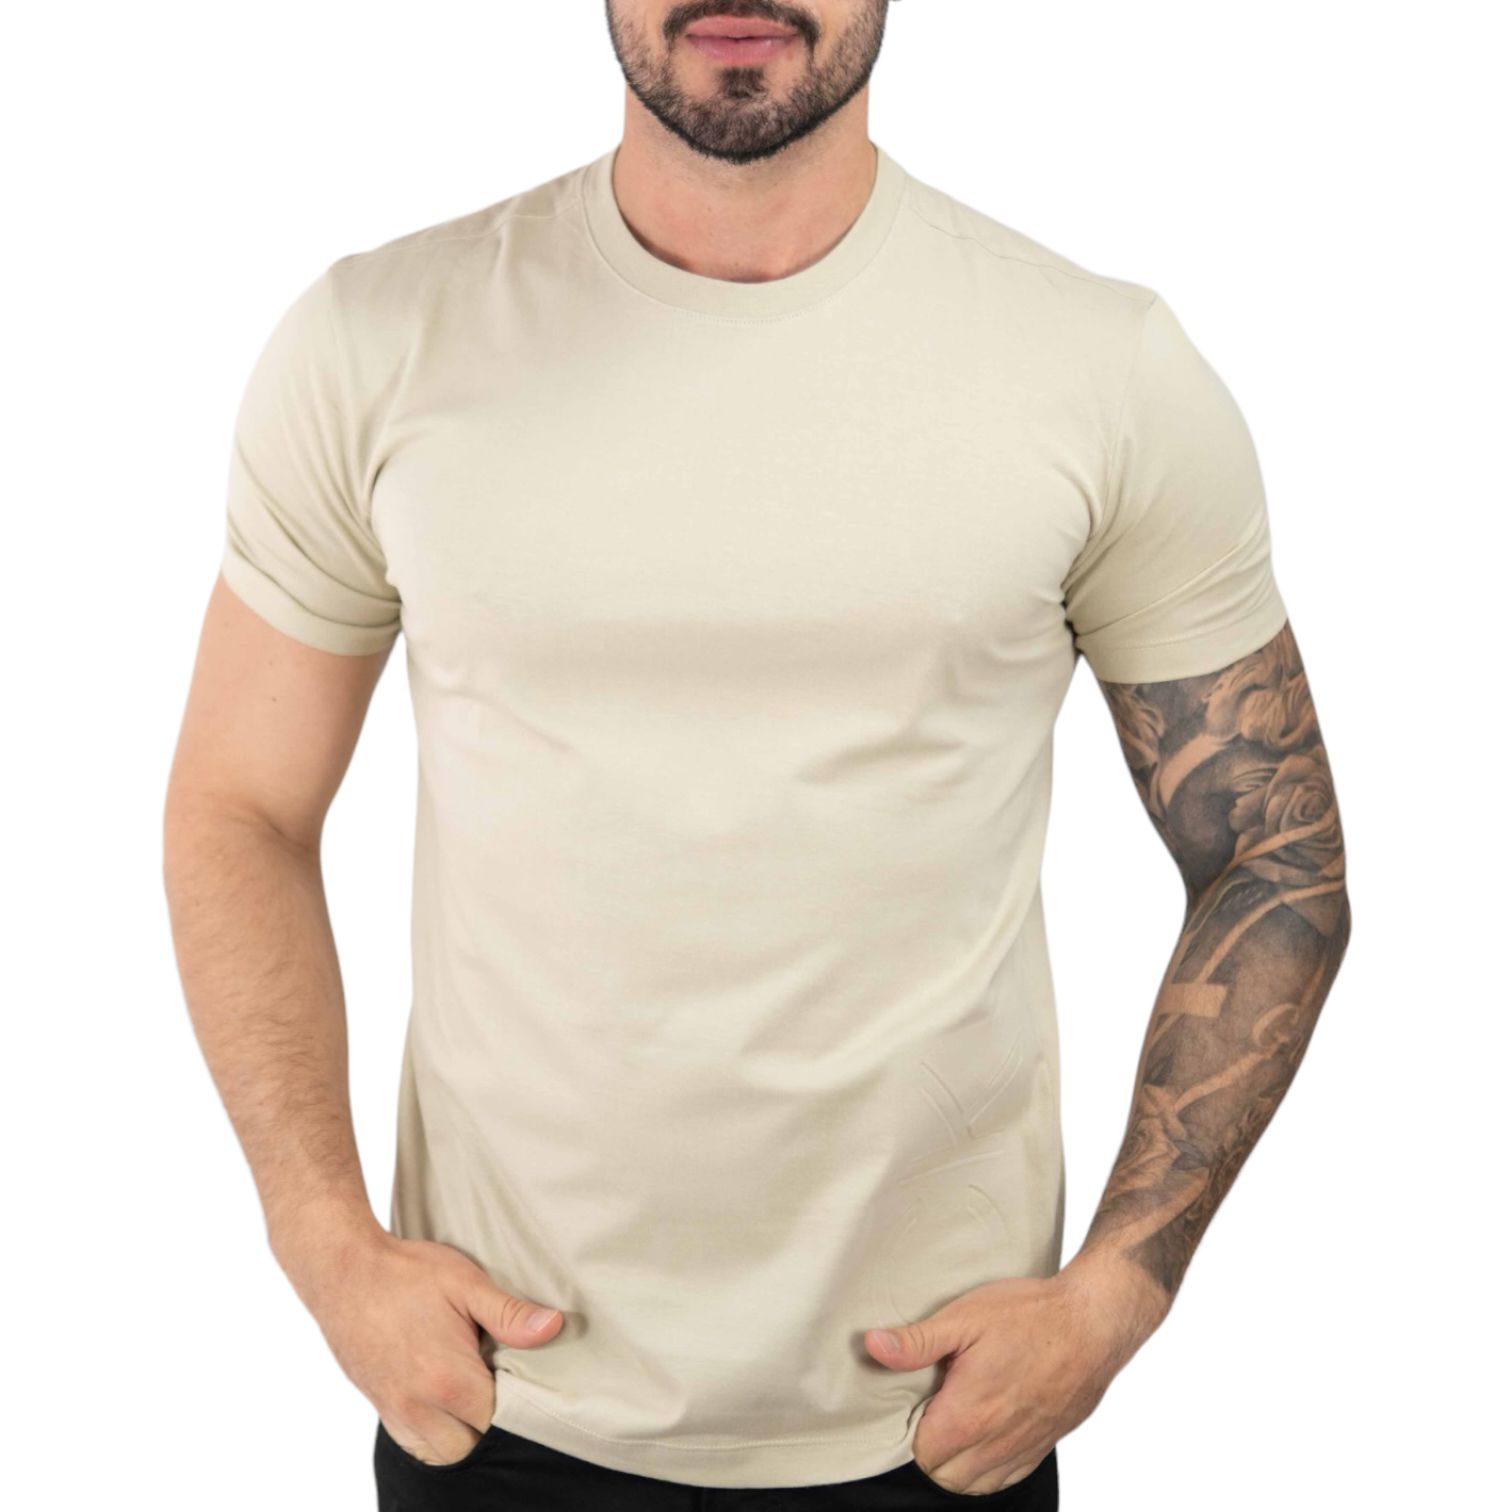 Camiseta Calvin Klein - Dikalnet